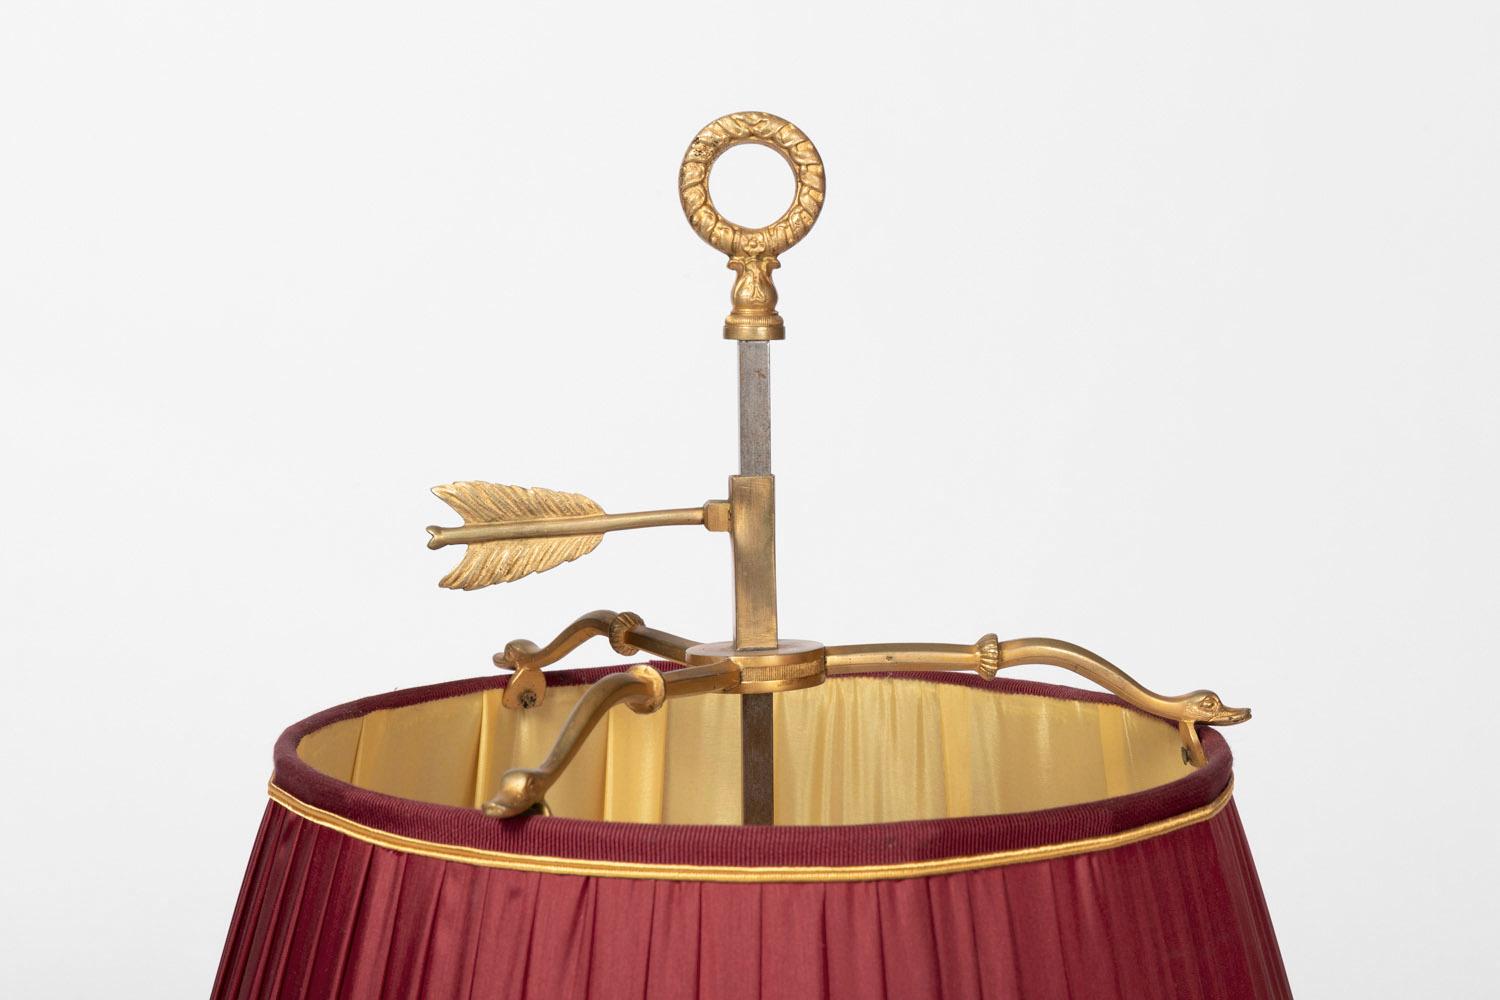 Lampe bouillotte de style Restauration en bronze doré à trois feux.
Base circulaire à bords ajourés de rinceaux feuillagés surmontée d'une petite colonne cannelée supportant une coupe circulaire entourée d'une galerie quinconce ajourée à fond de